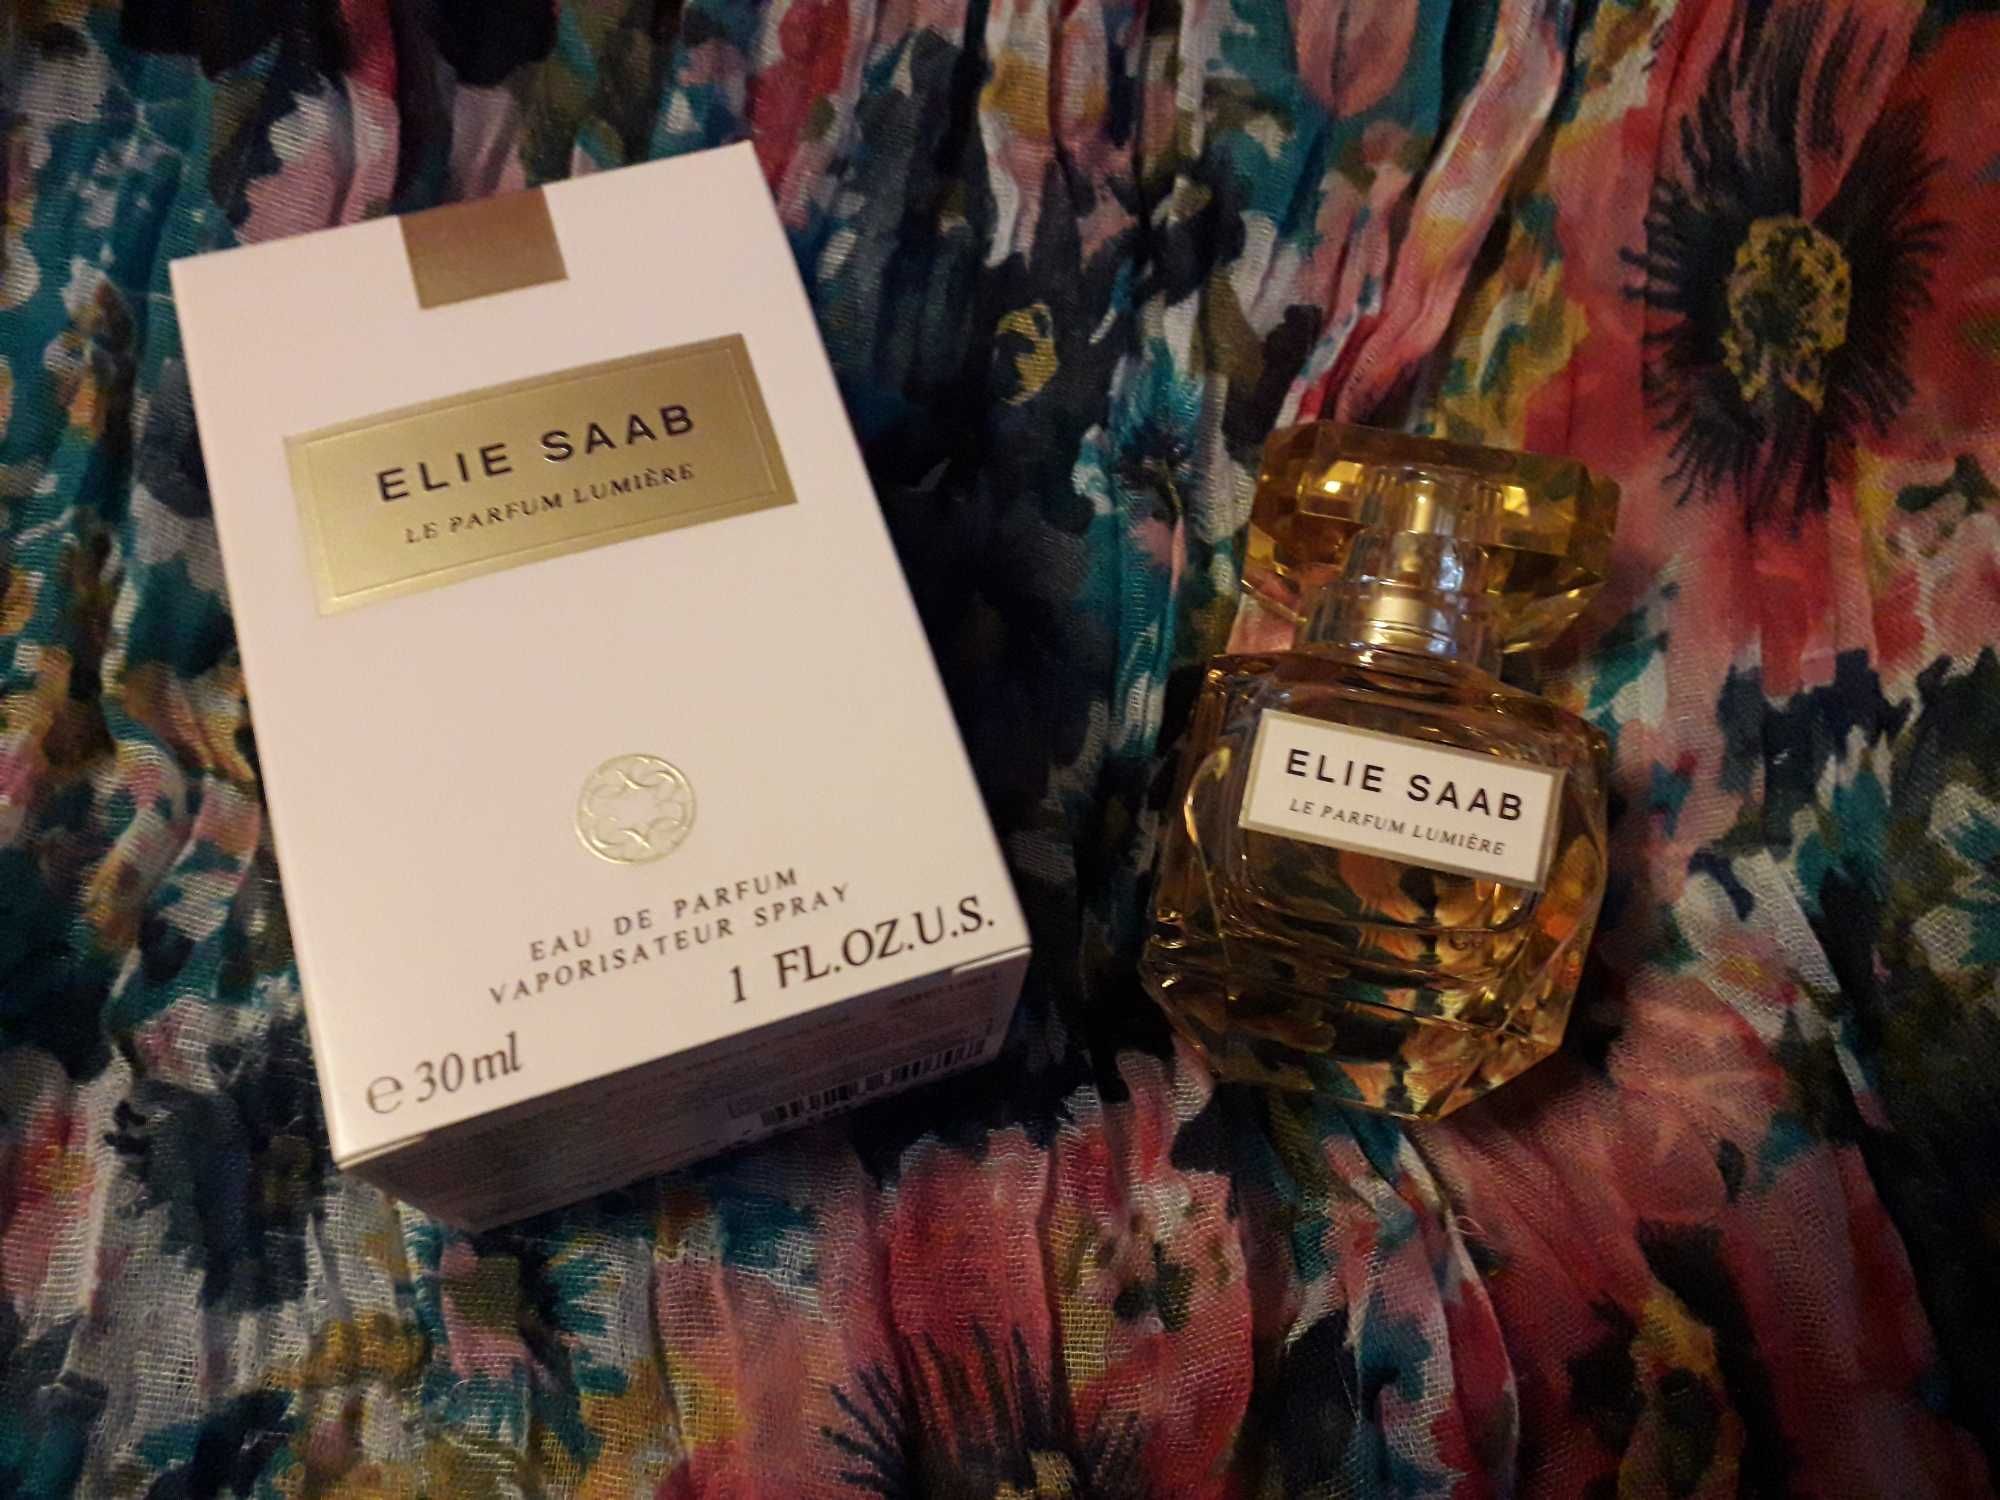 Le Parfum Lumière Elie Saab